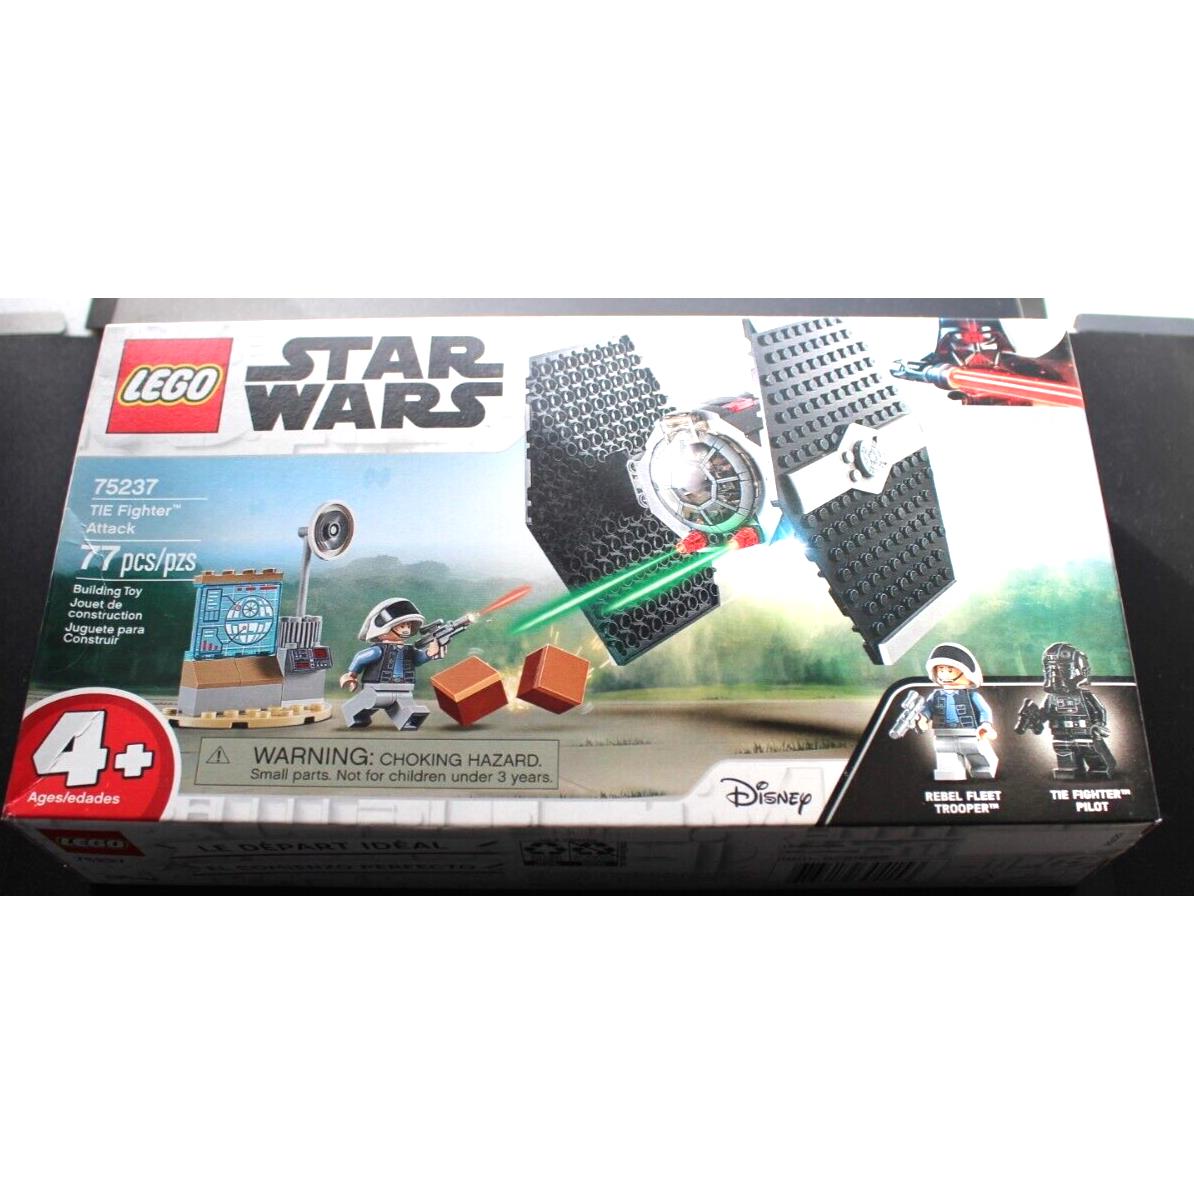 Lego 75237 Star Wars Tie Fighter Attack Retired